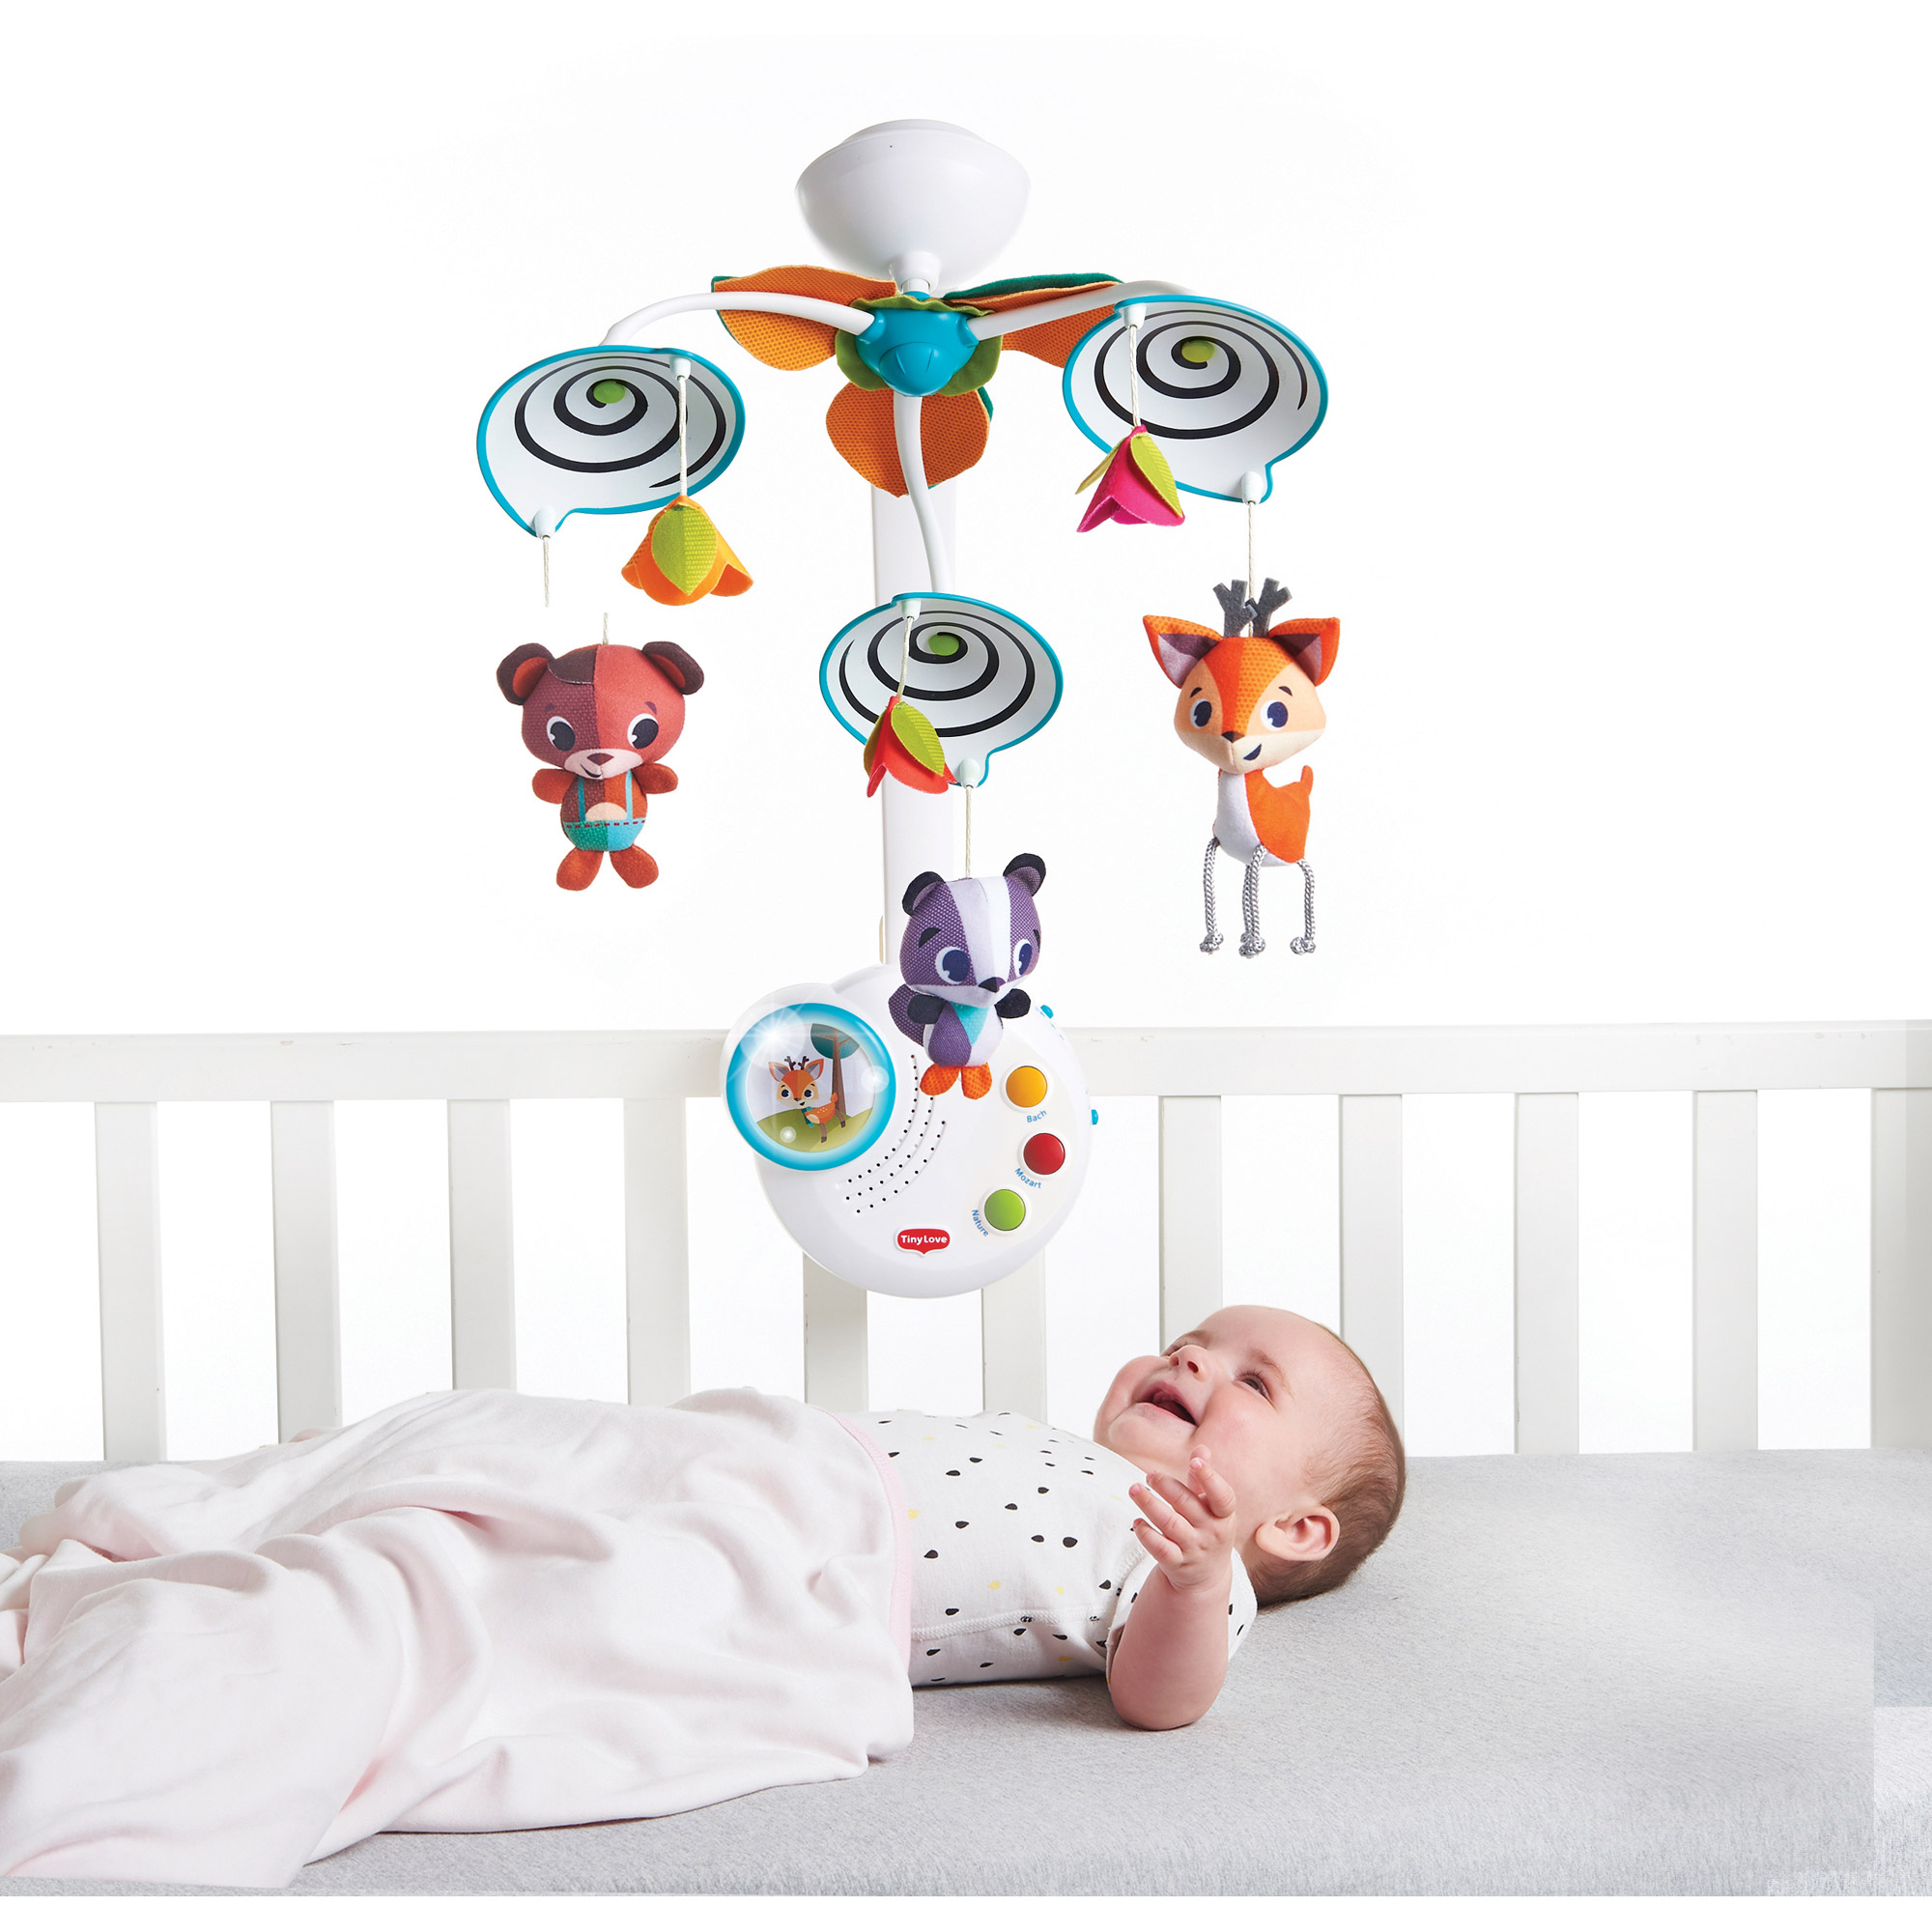 Cb toys Jouet Berceau Et Porte-bébé Avec Accessoires Multicolore